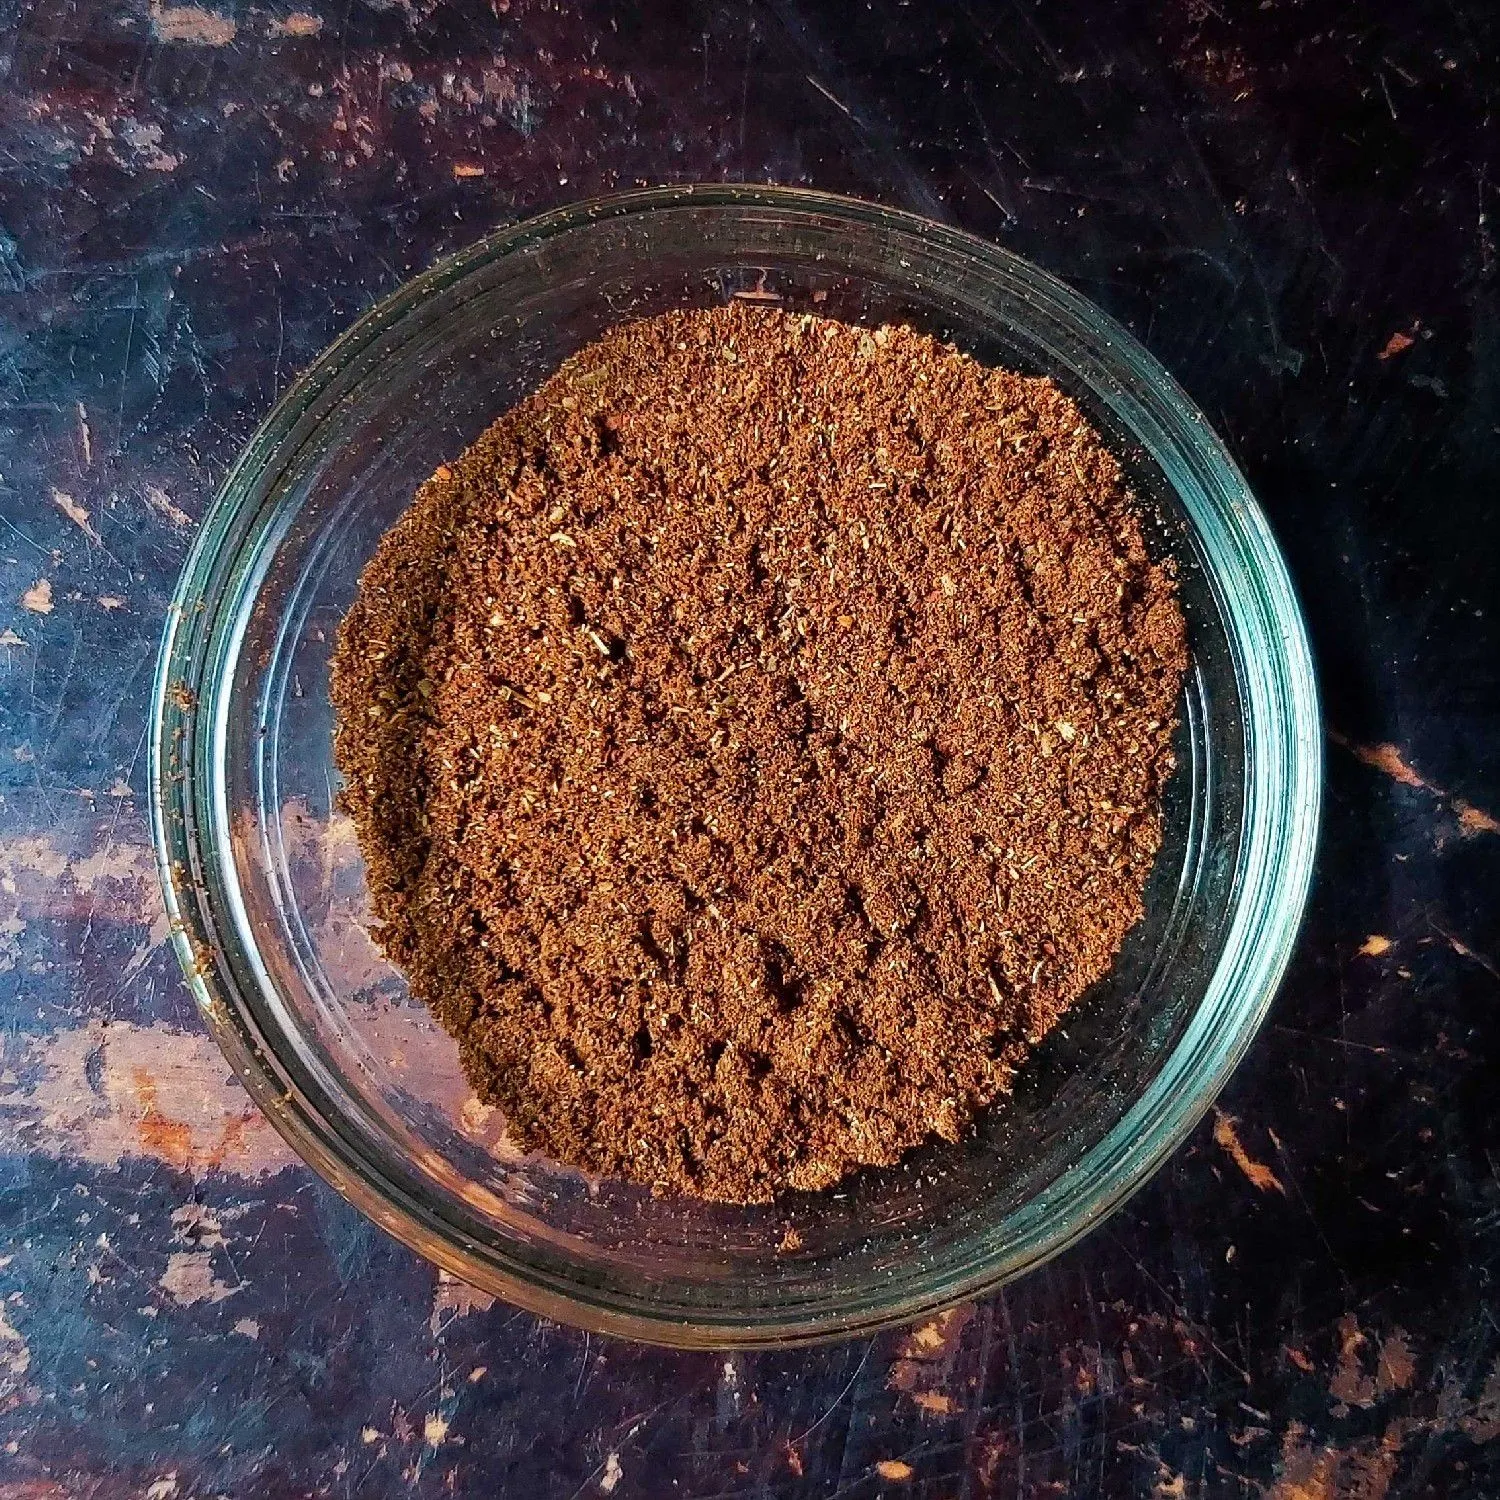 Bubuk Ngohiong / 5 Spices Powder